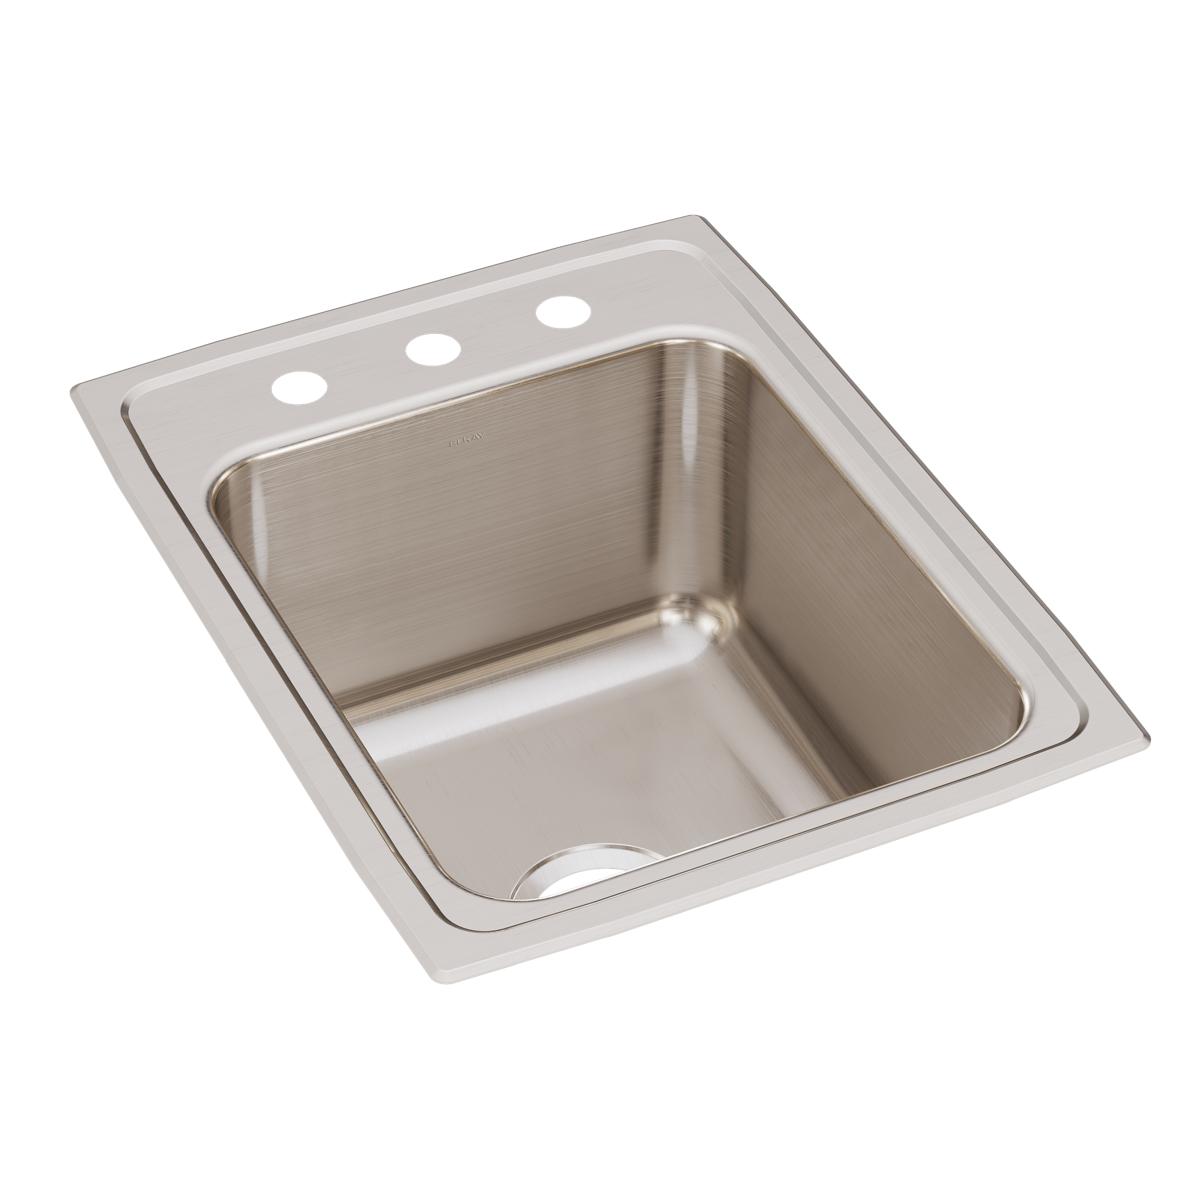 Elkay Lustertone Classic 17" x 22" x 10-1/8" Stainless Steel Single Bowl Drop-in Sink